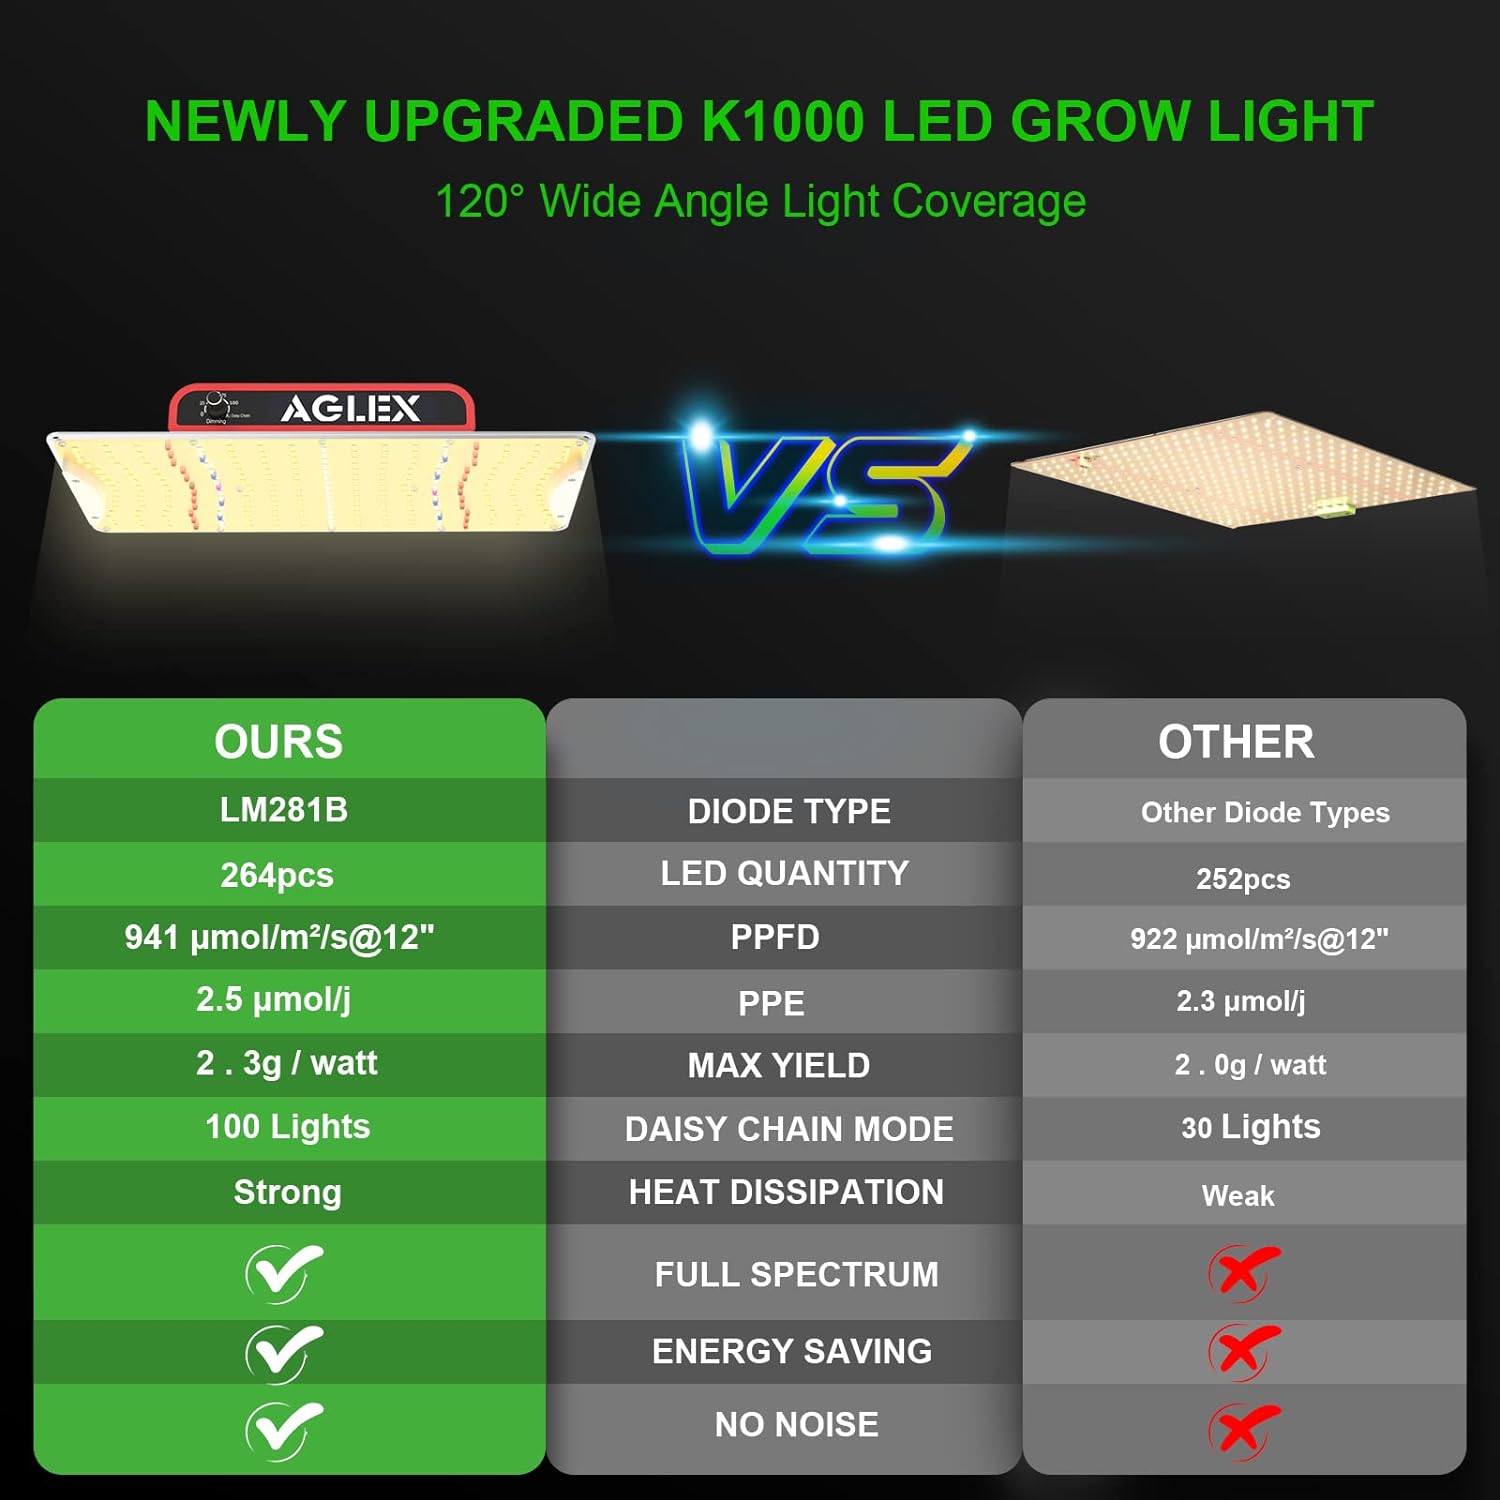 AGLEX K1000 LED Grow Light Review